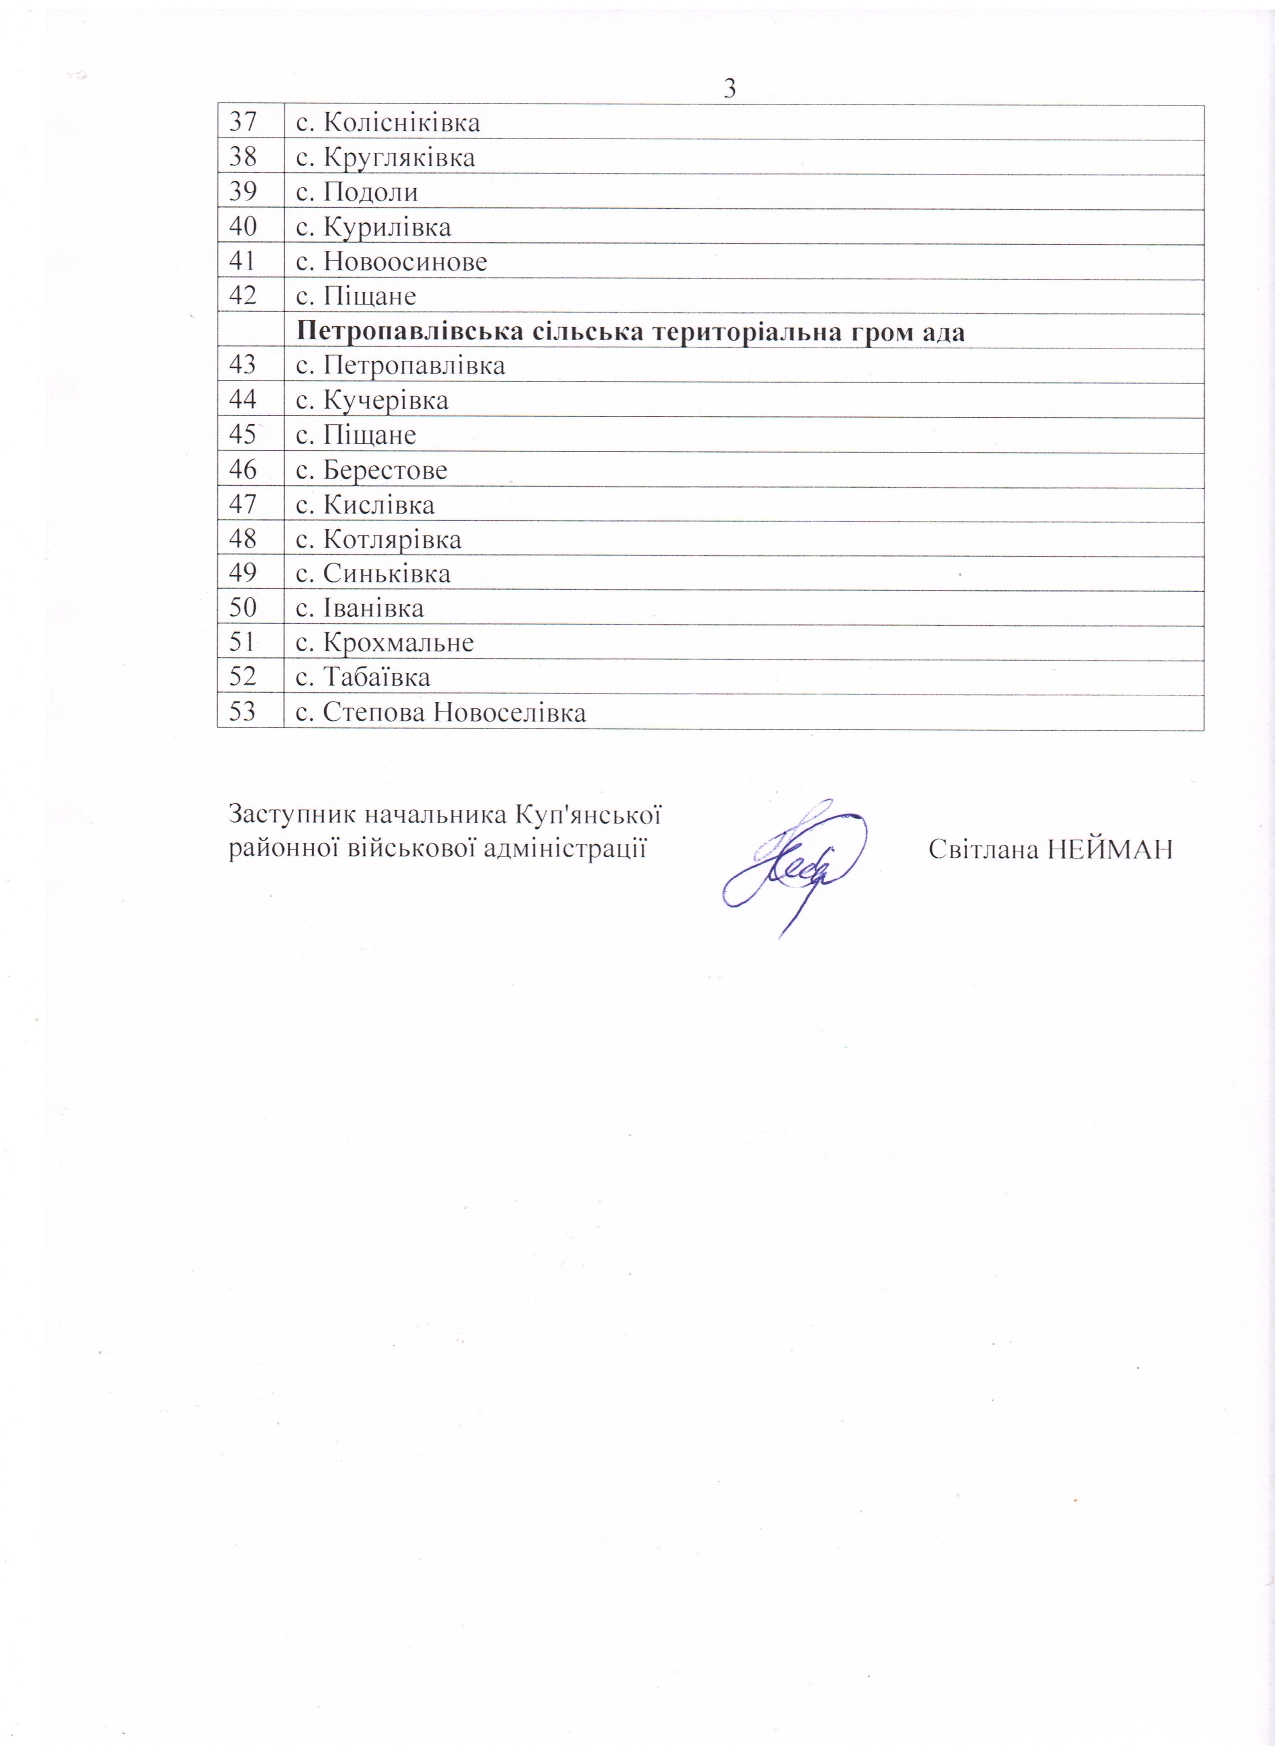 Розпорядження оприлюднене Куп’янською міською військовою адміністрацією.